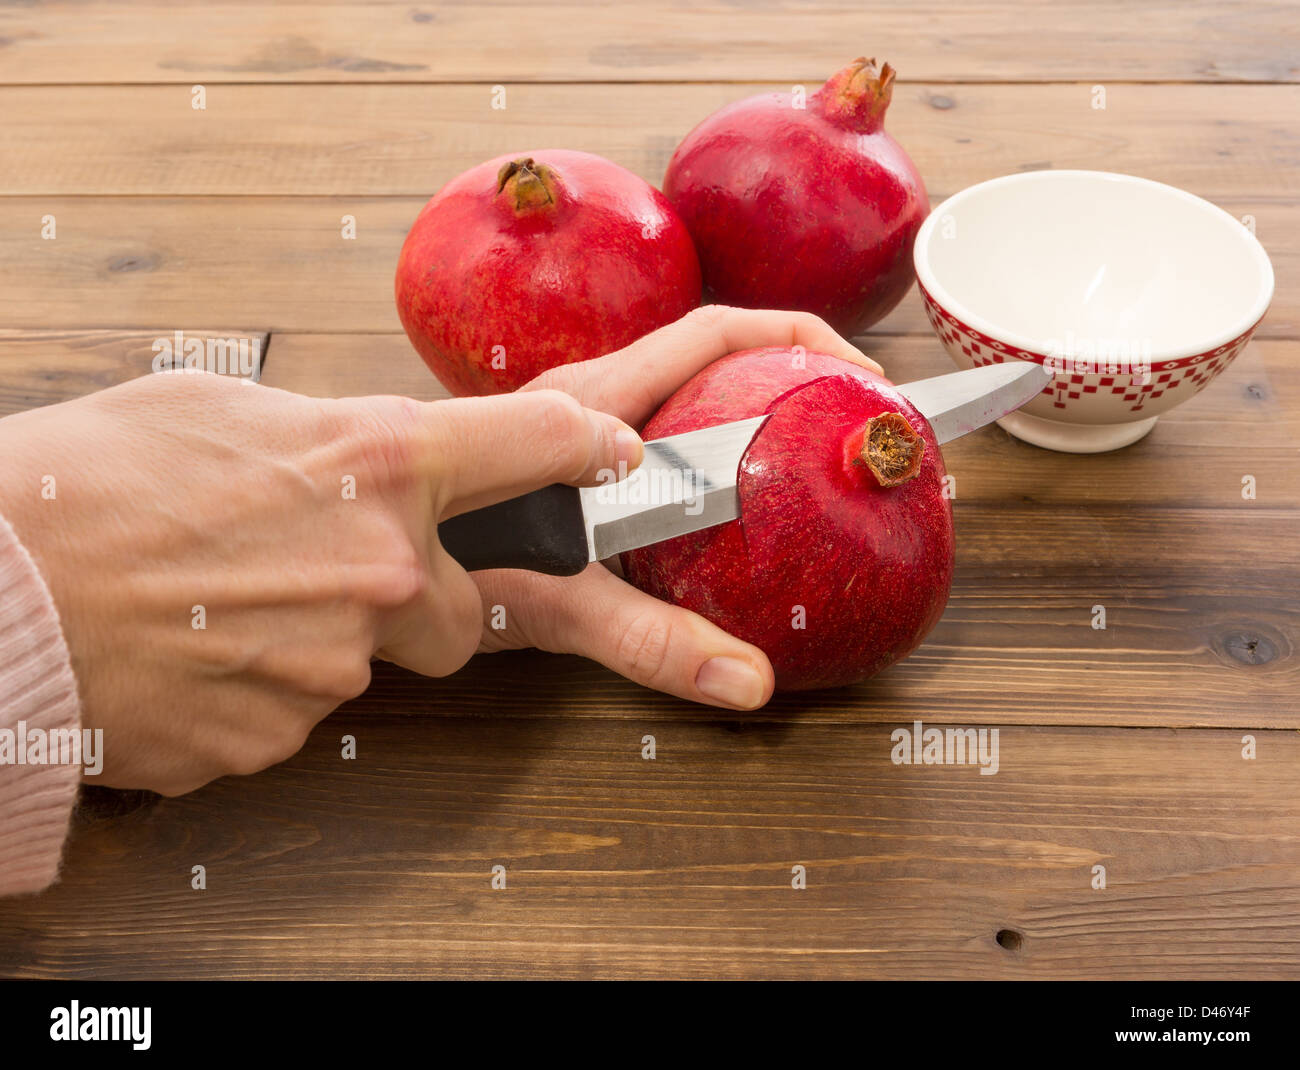 Weibliche Hände schneiden einen frischen Granatapfel in Abschnitte Stockfoto